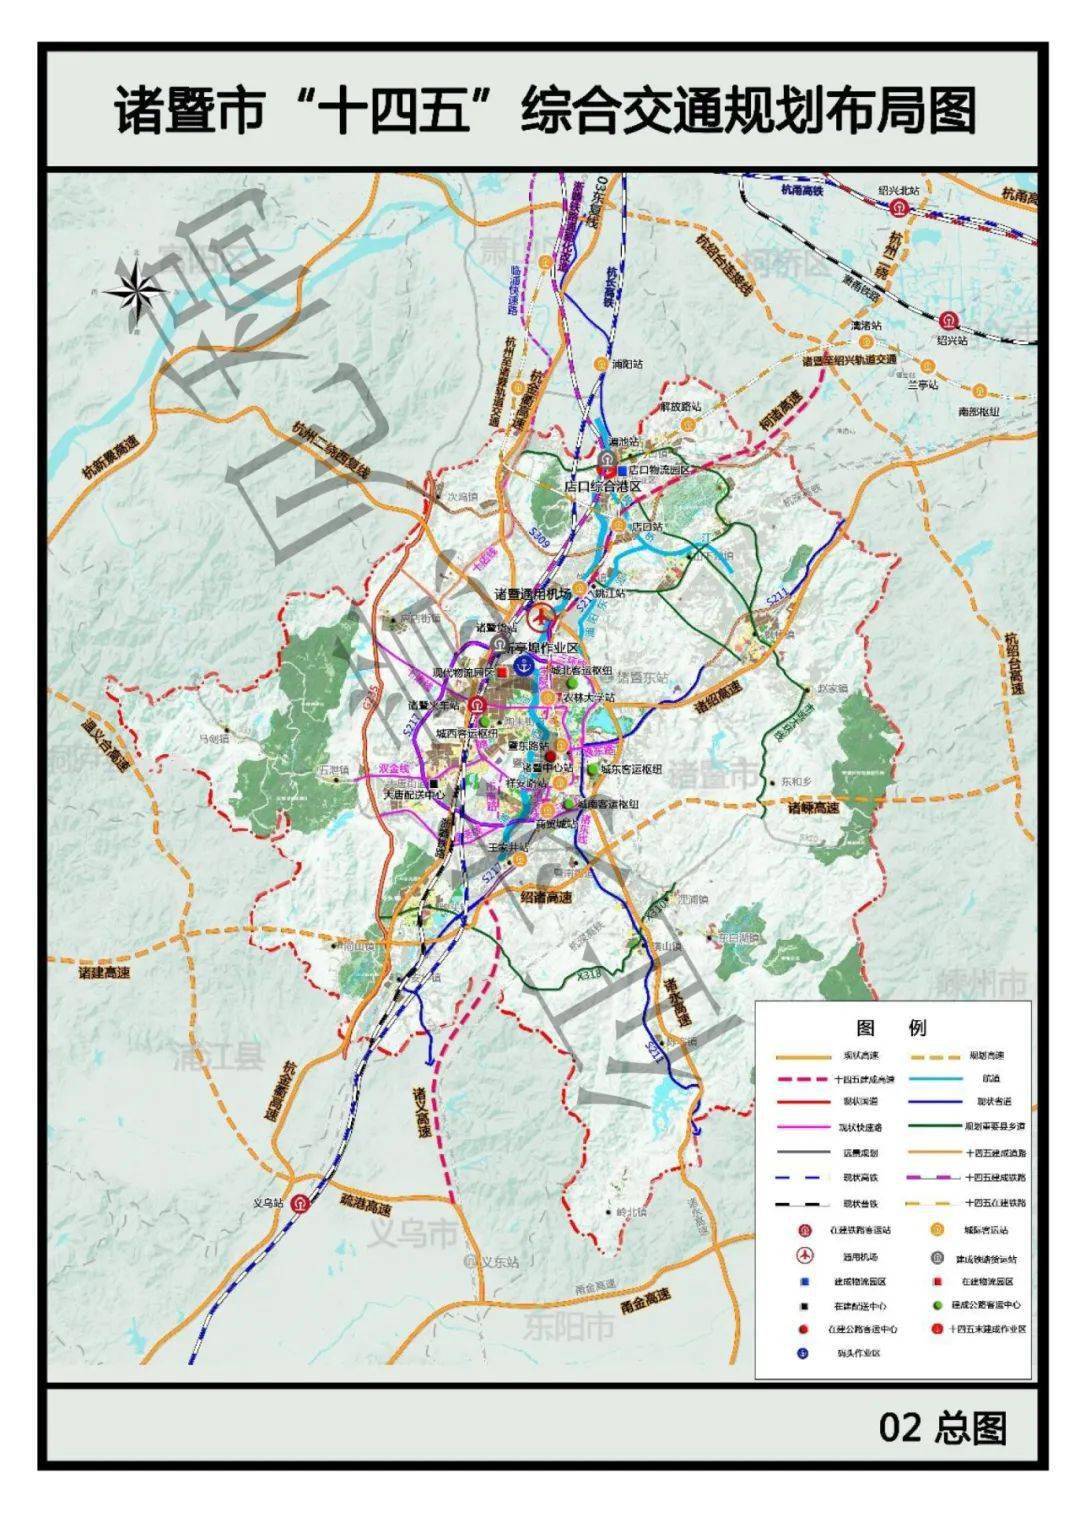 诸暨市综合立体交通网规划(2021-2050 年)  来源:诸暨市交通运输局